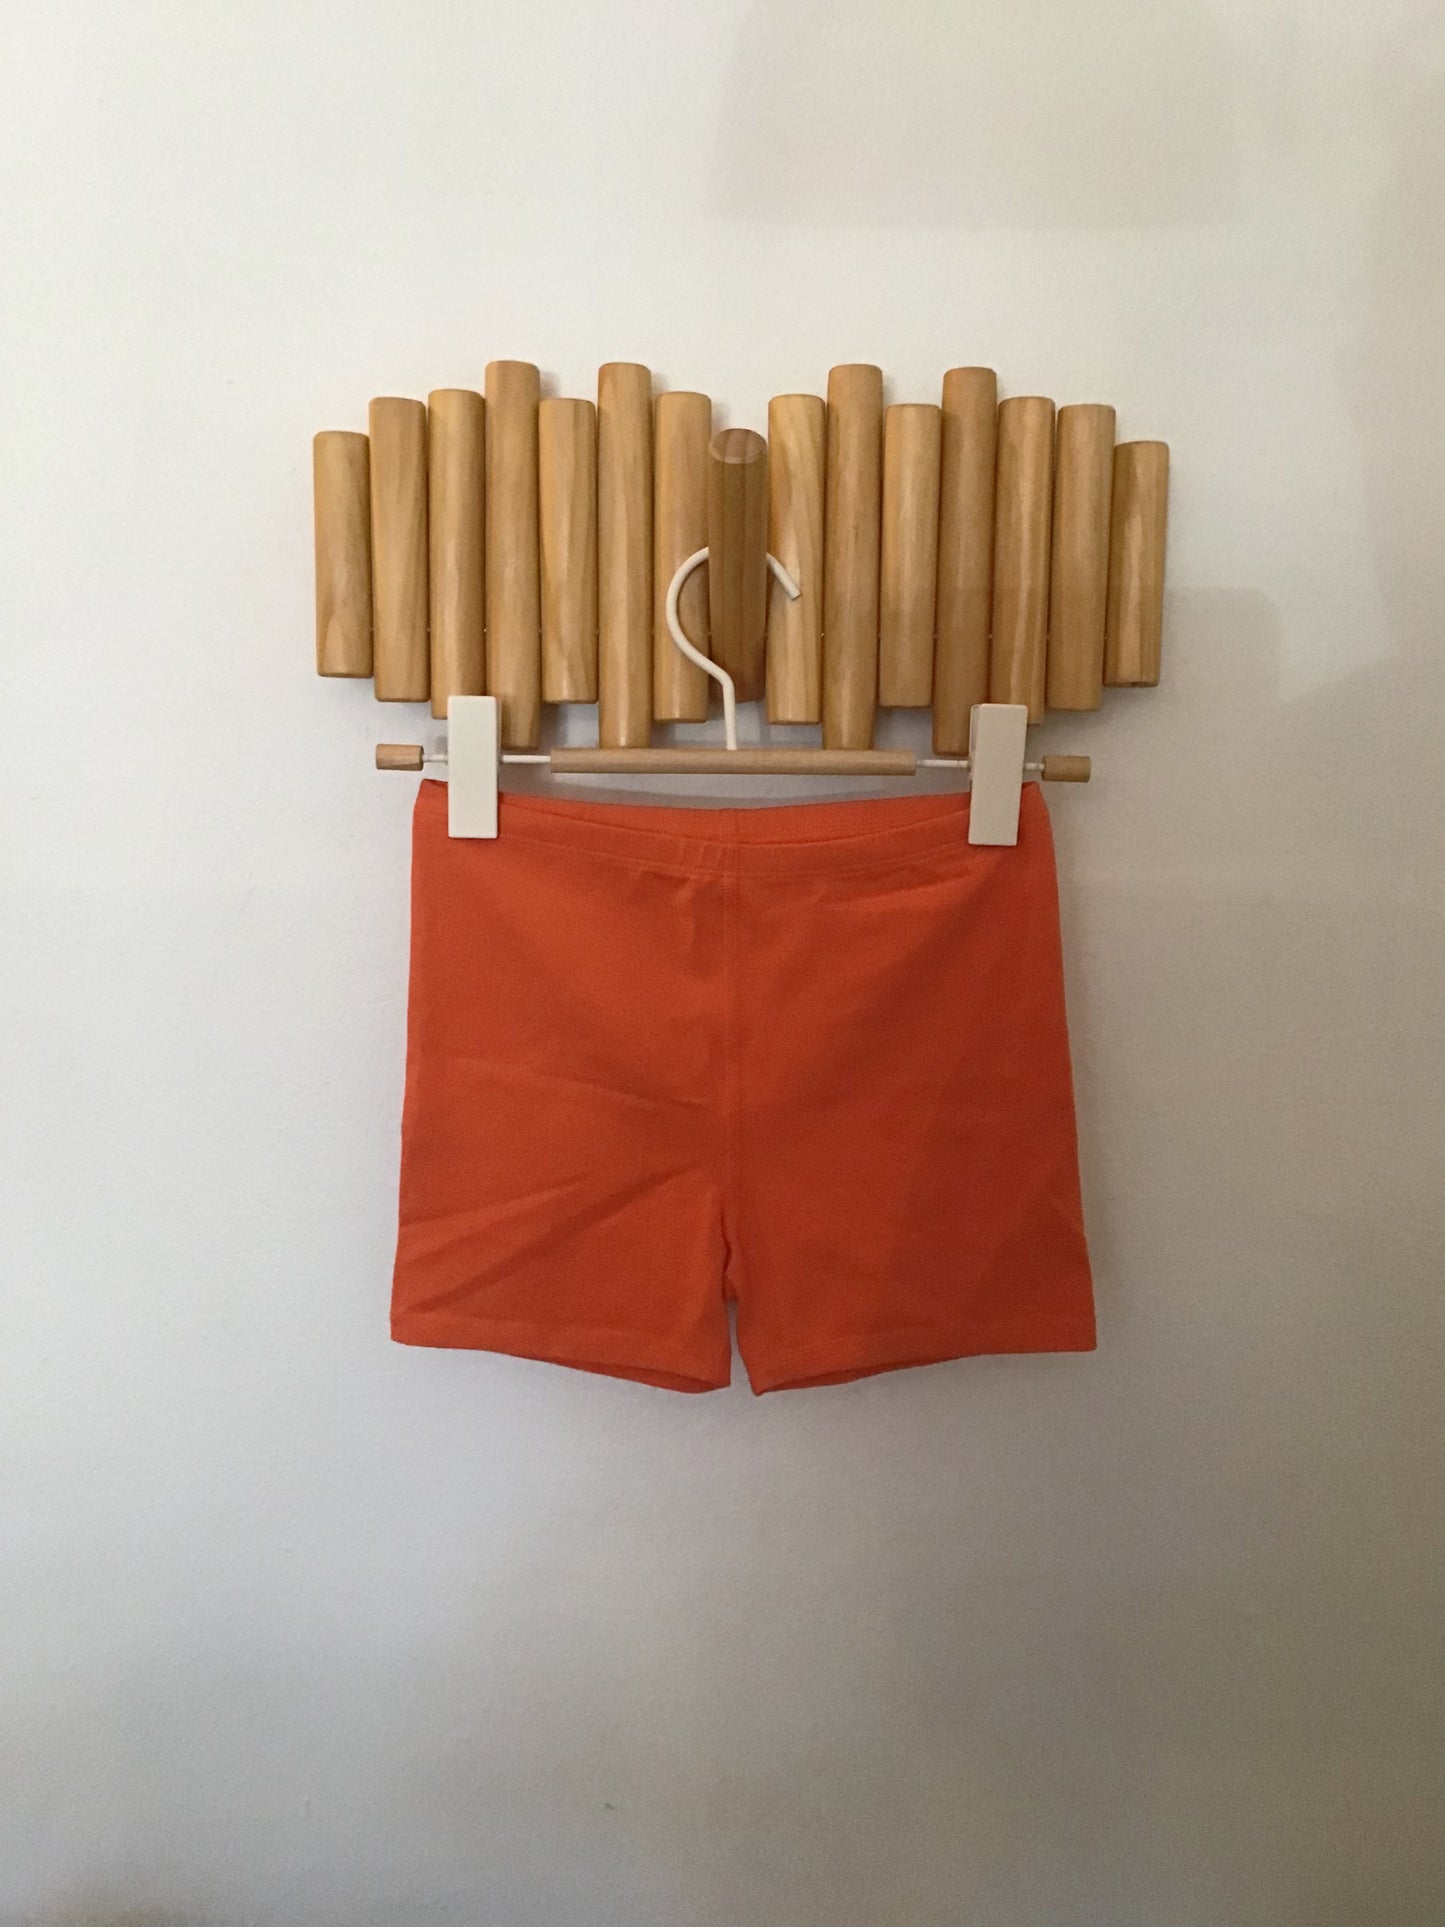 Primary orange shorts 10y